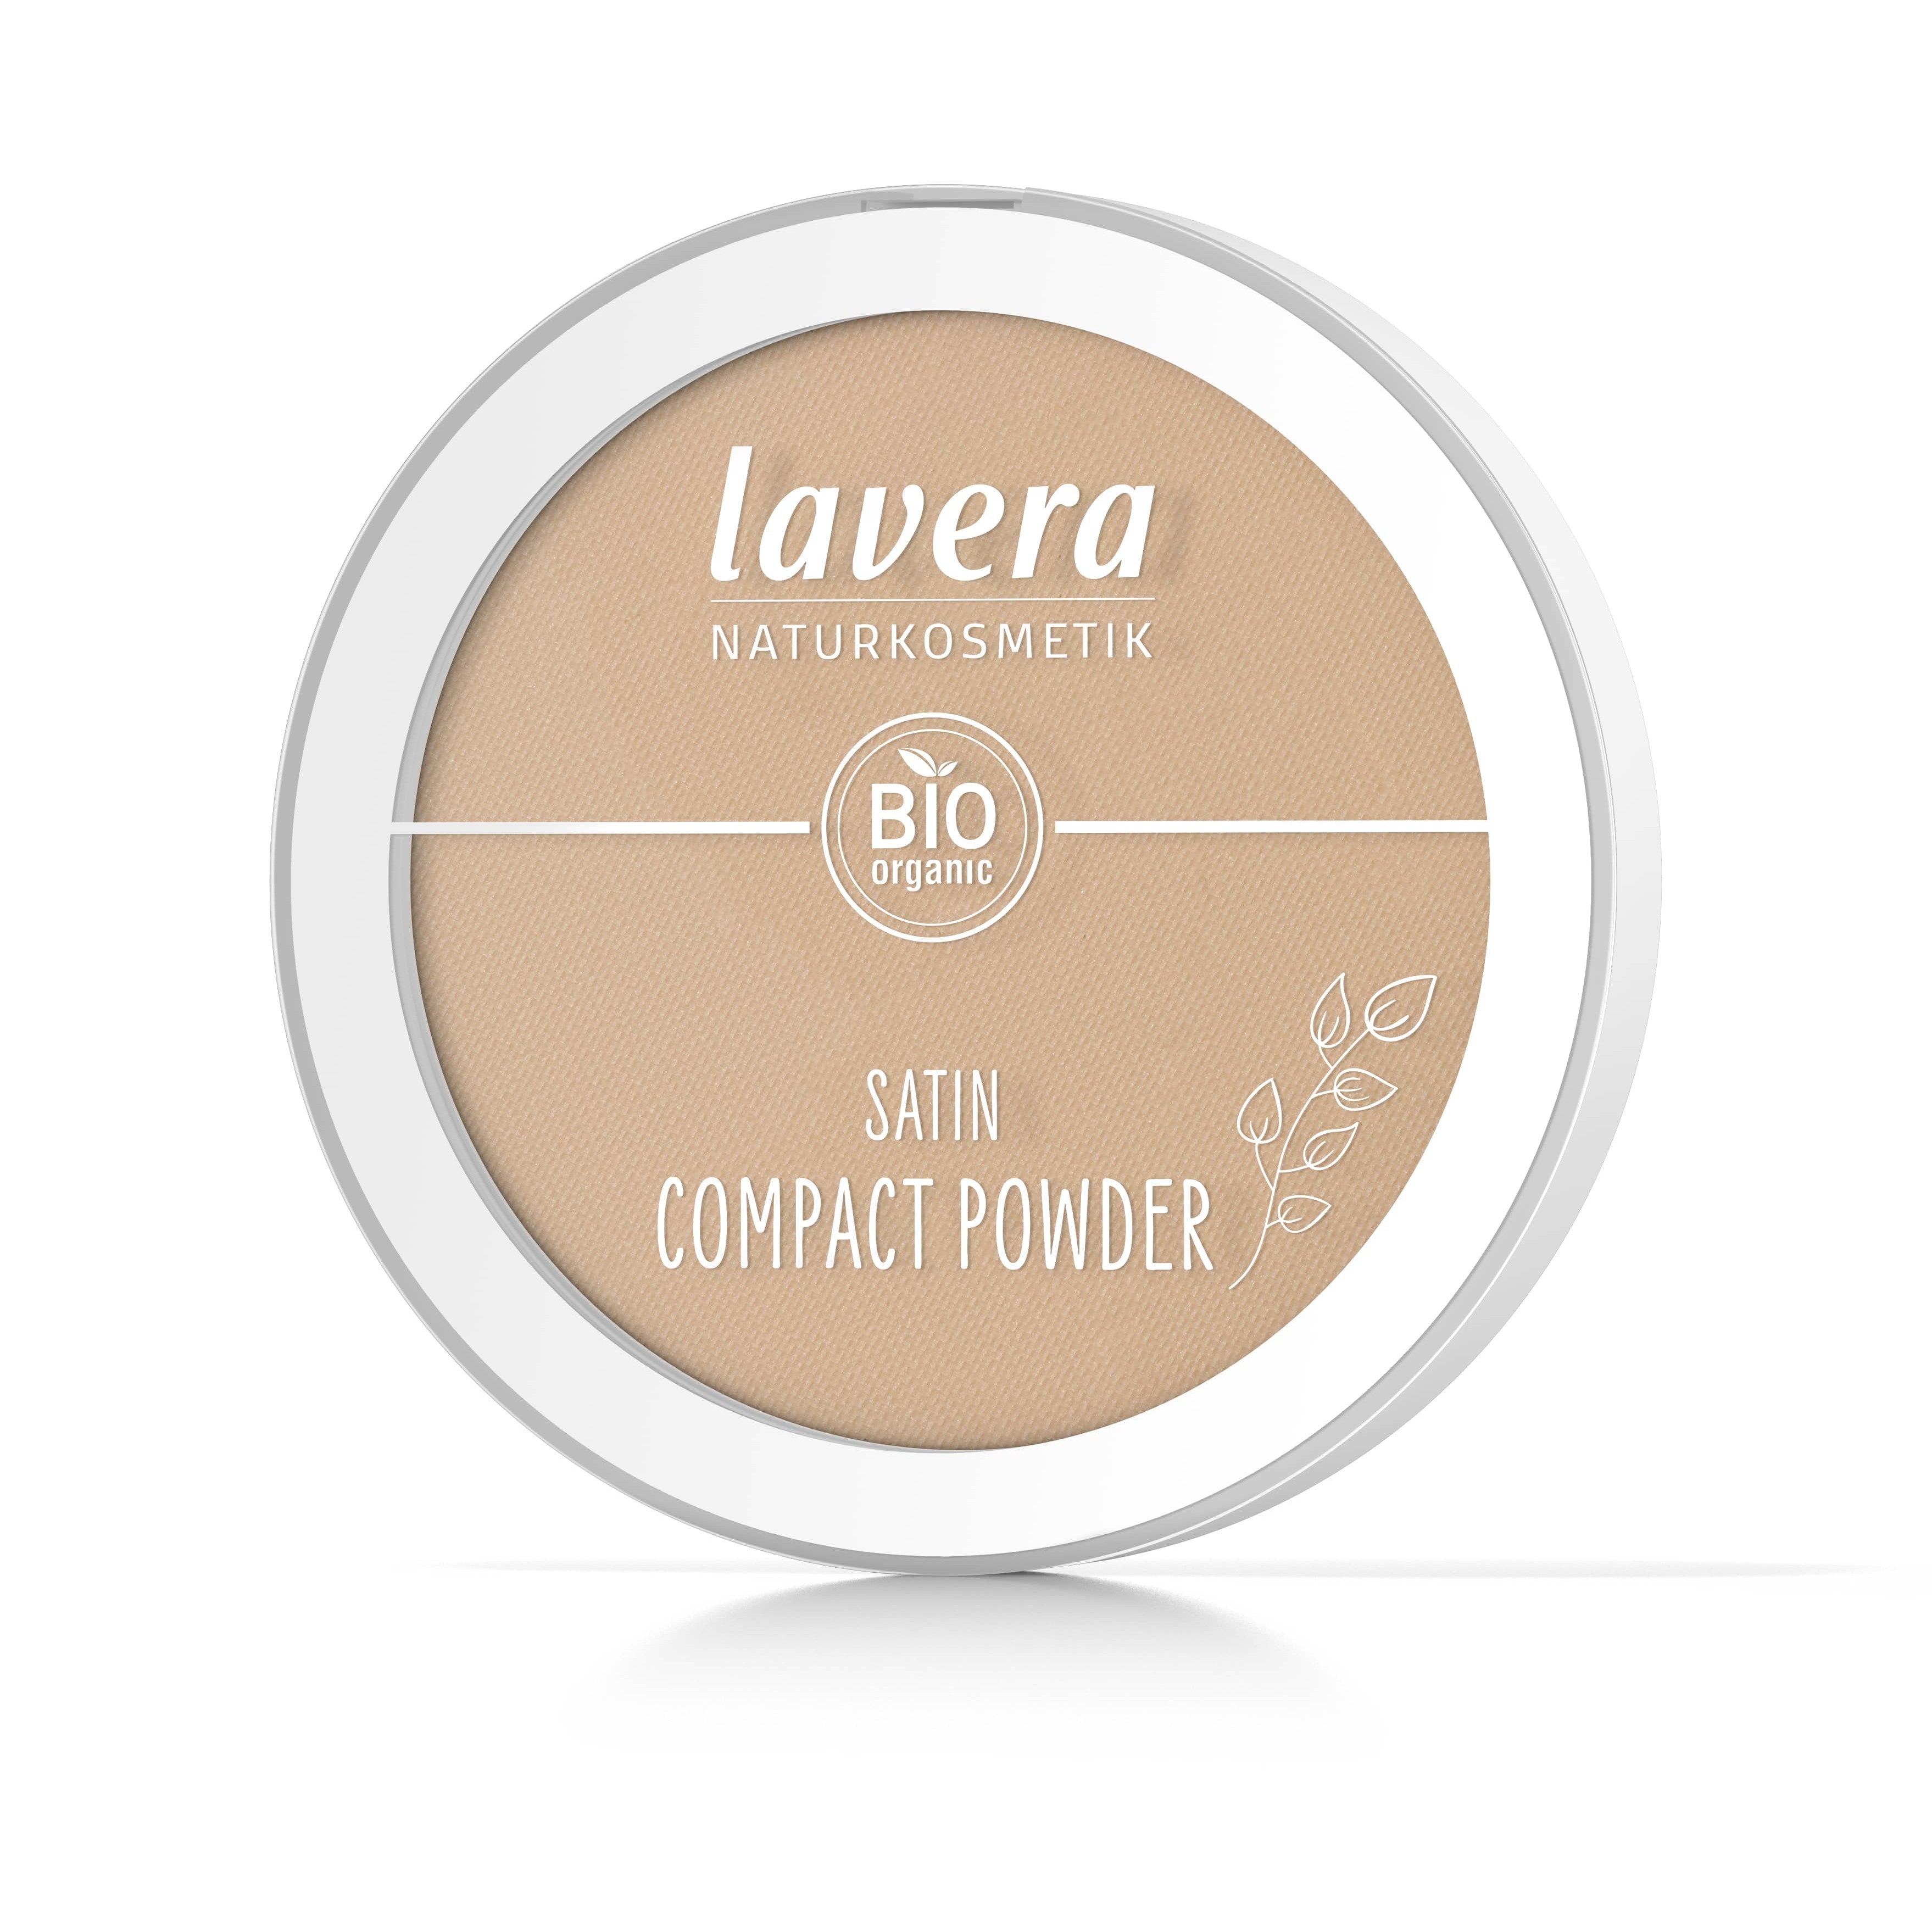 Lavera Satin Compact Powder puuteri, Tanned 03